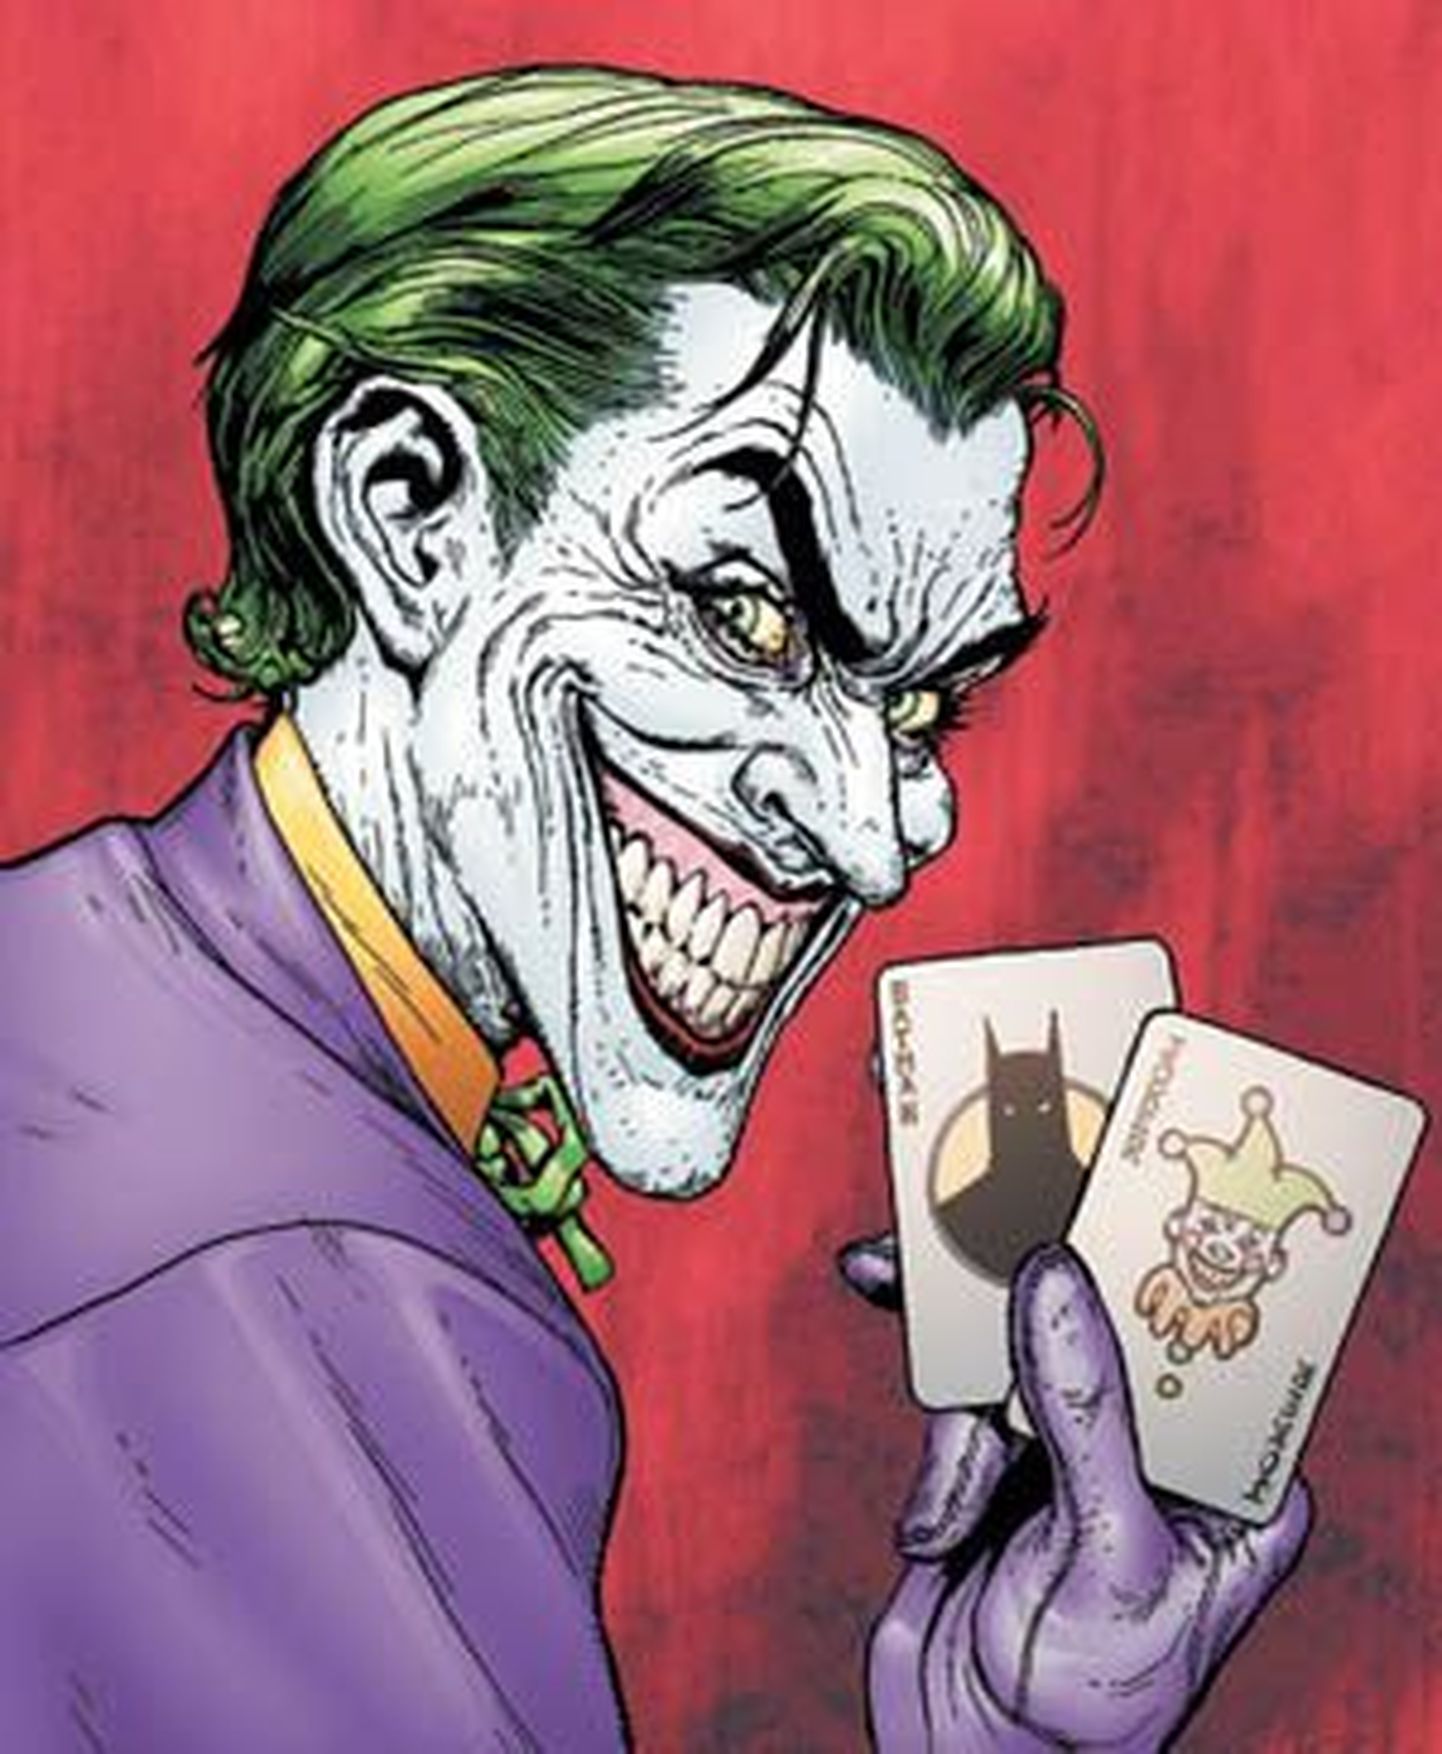 Batmani-filmi «The Man Who Lauhgs» poster, kus on kujutatud Jokeri-nimelist tegelast.